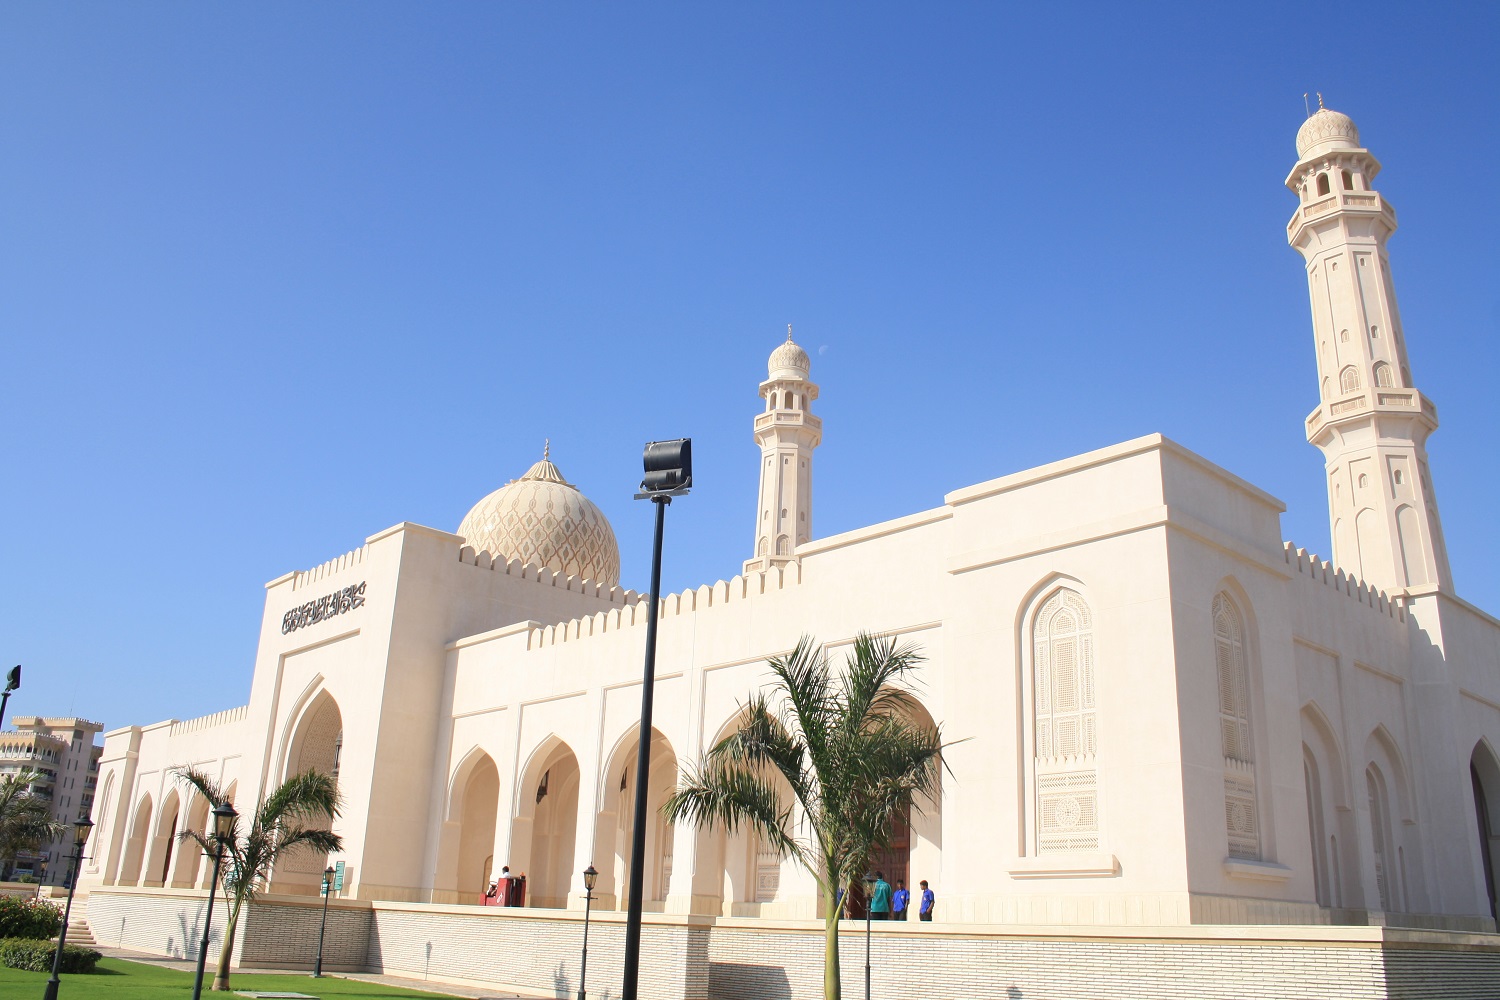 Mein Schiff Ausflugsziel: Die Sultan Qaboos Moschee - die zweitgrößte Moschee des Omans –